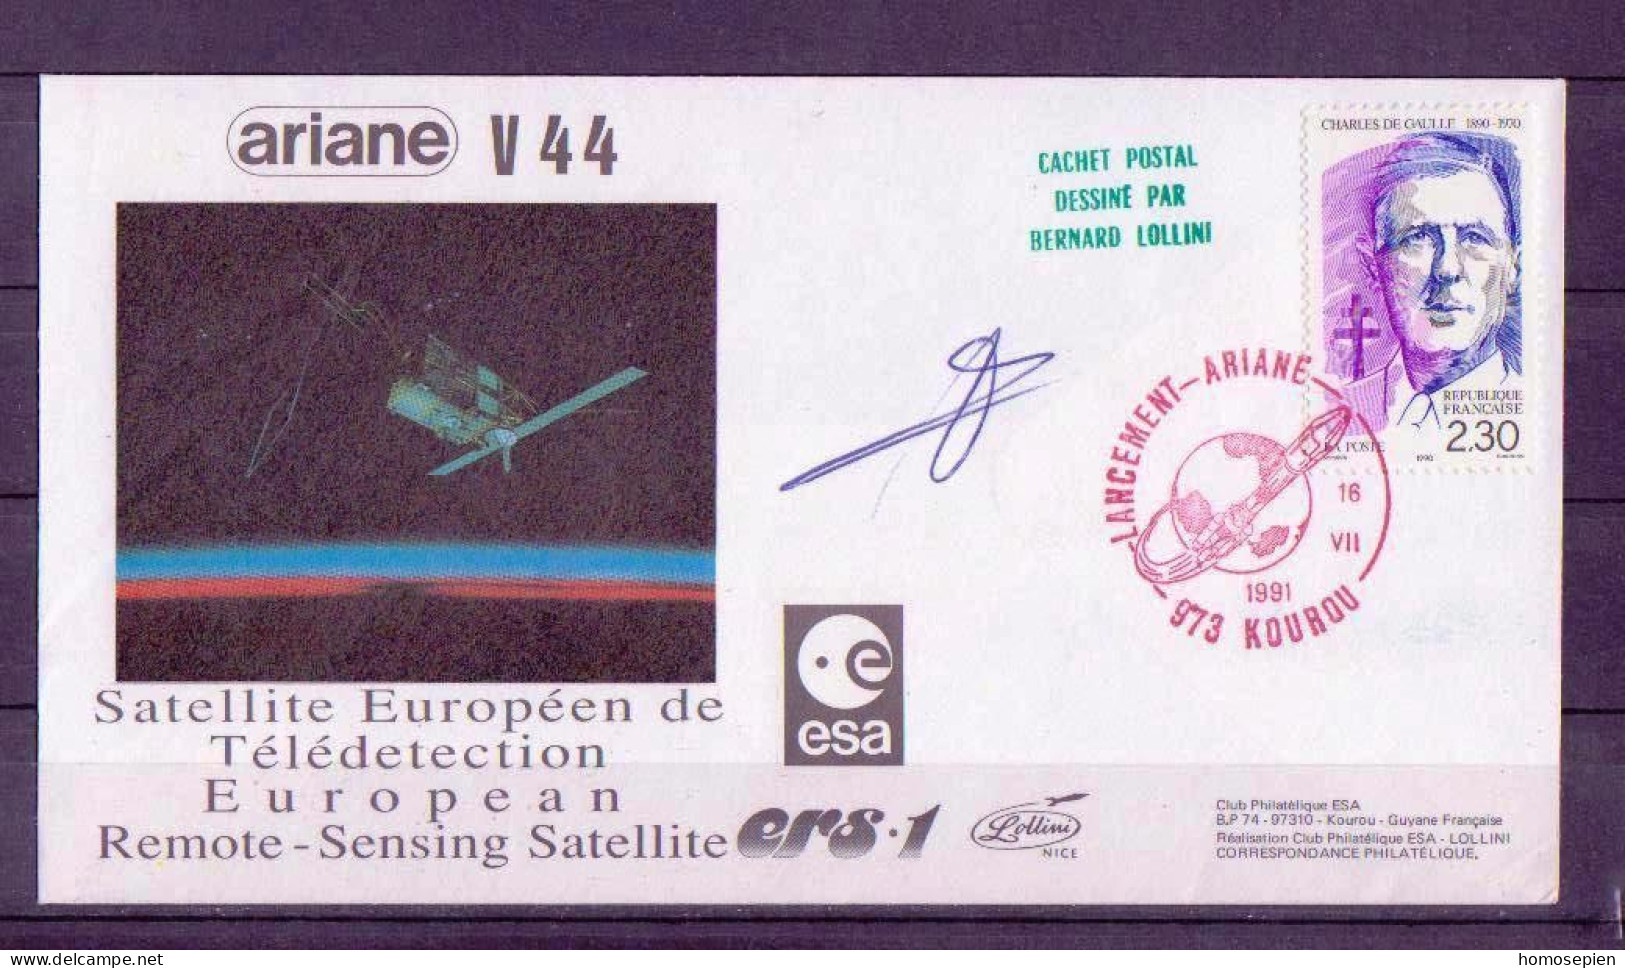 Espace 1991 07 17 - ESA - Ariane V44 - Composite Rouge - Europa